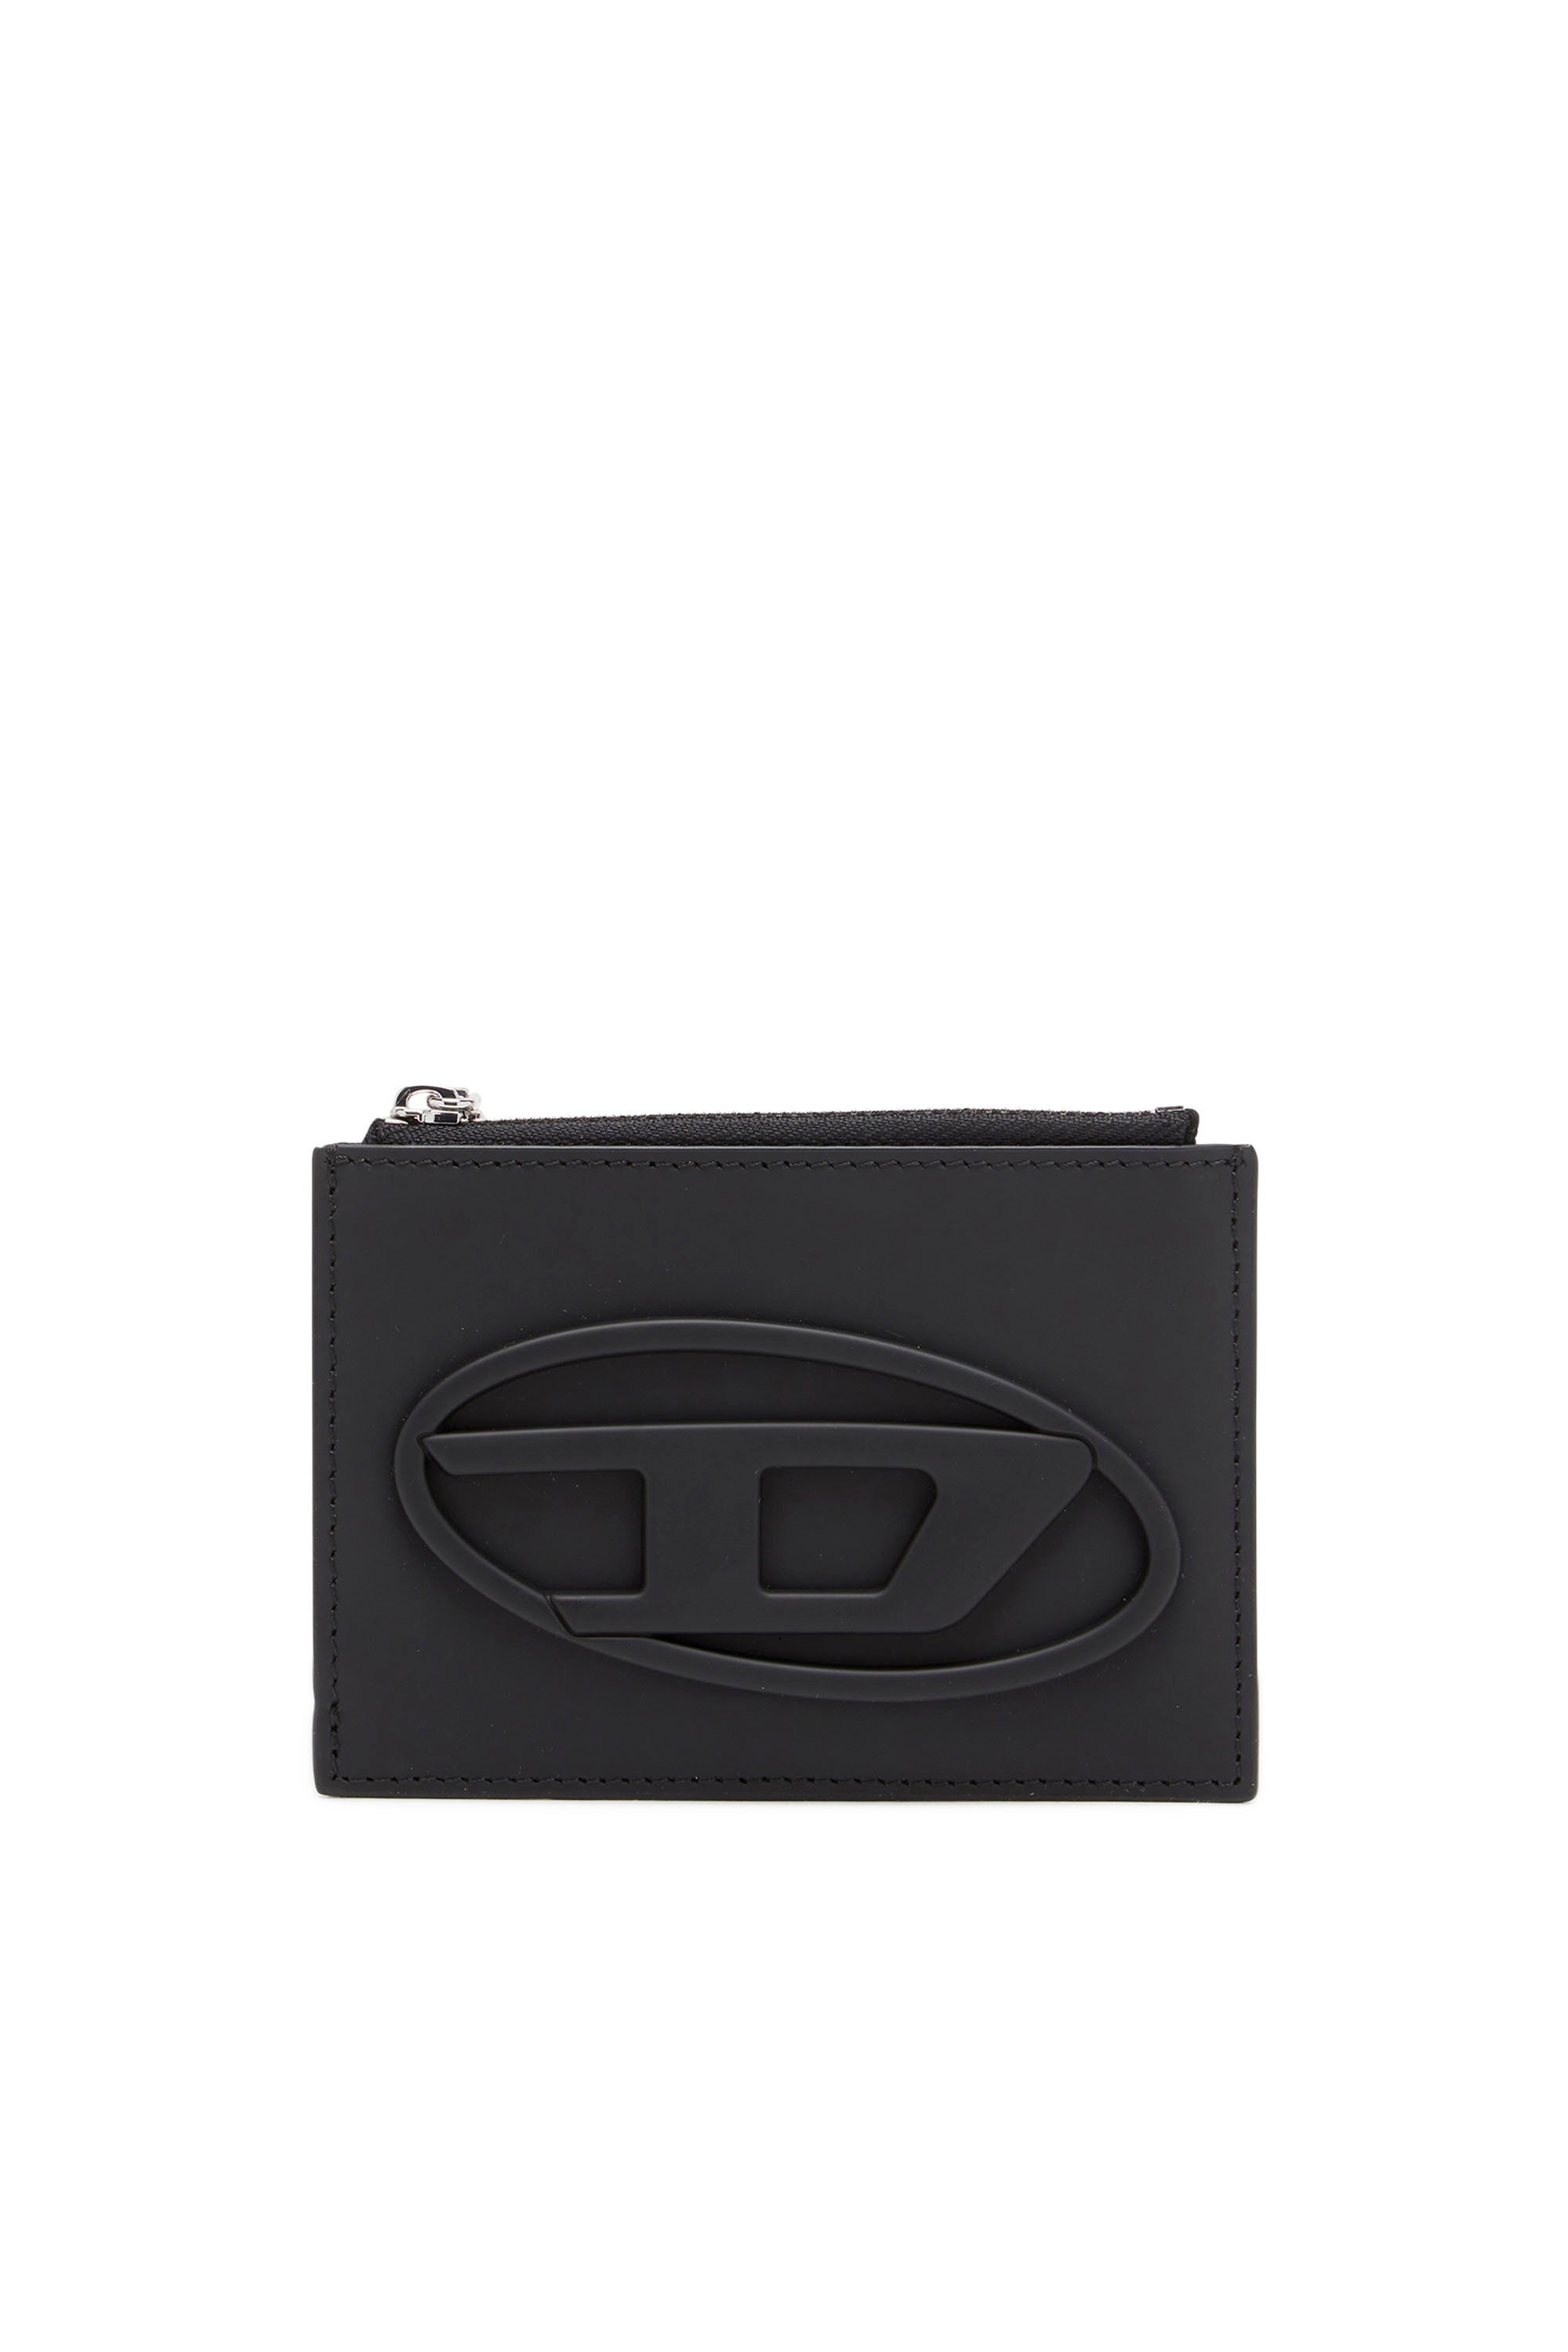 Diesel - 1DR CARD HOLDER I, Black - Image 1